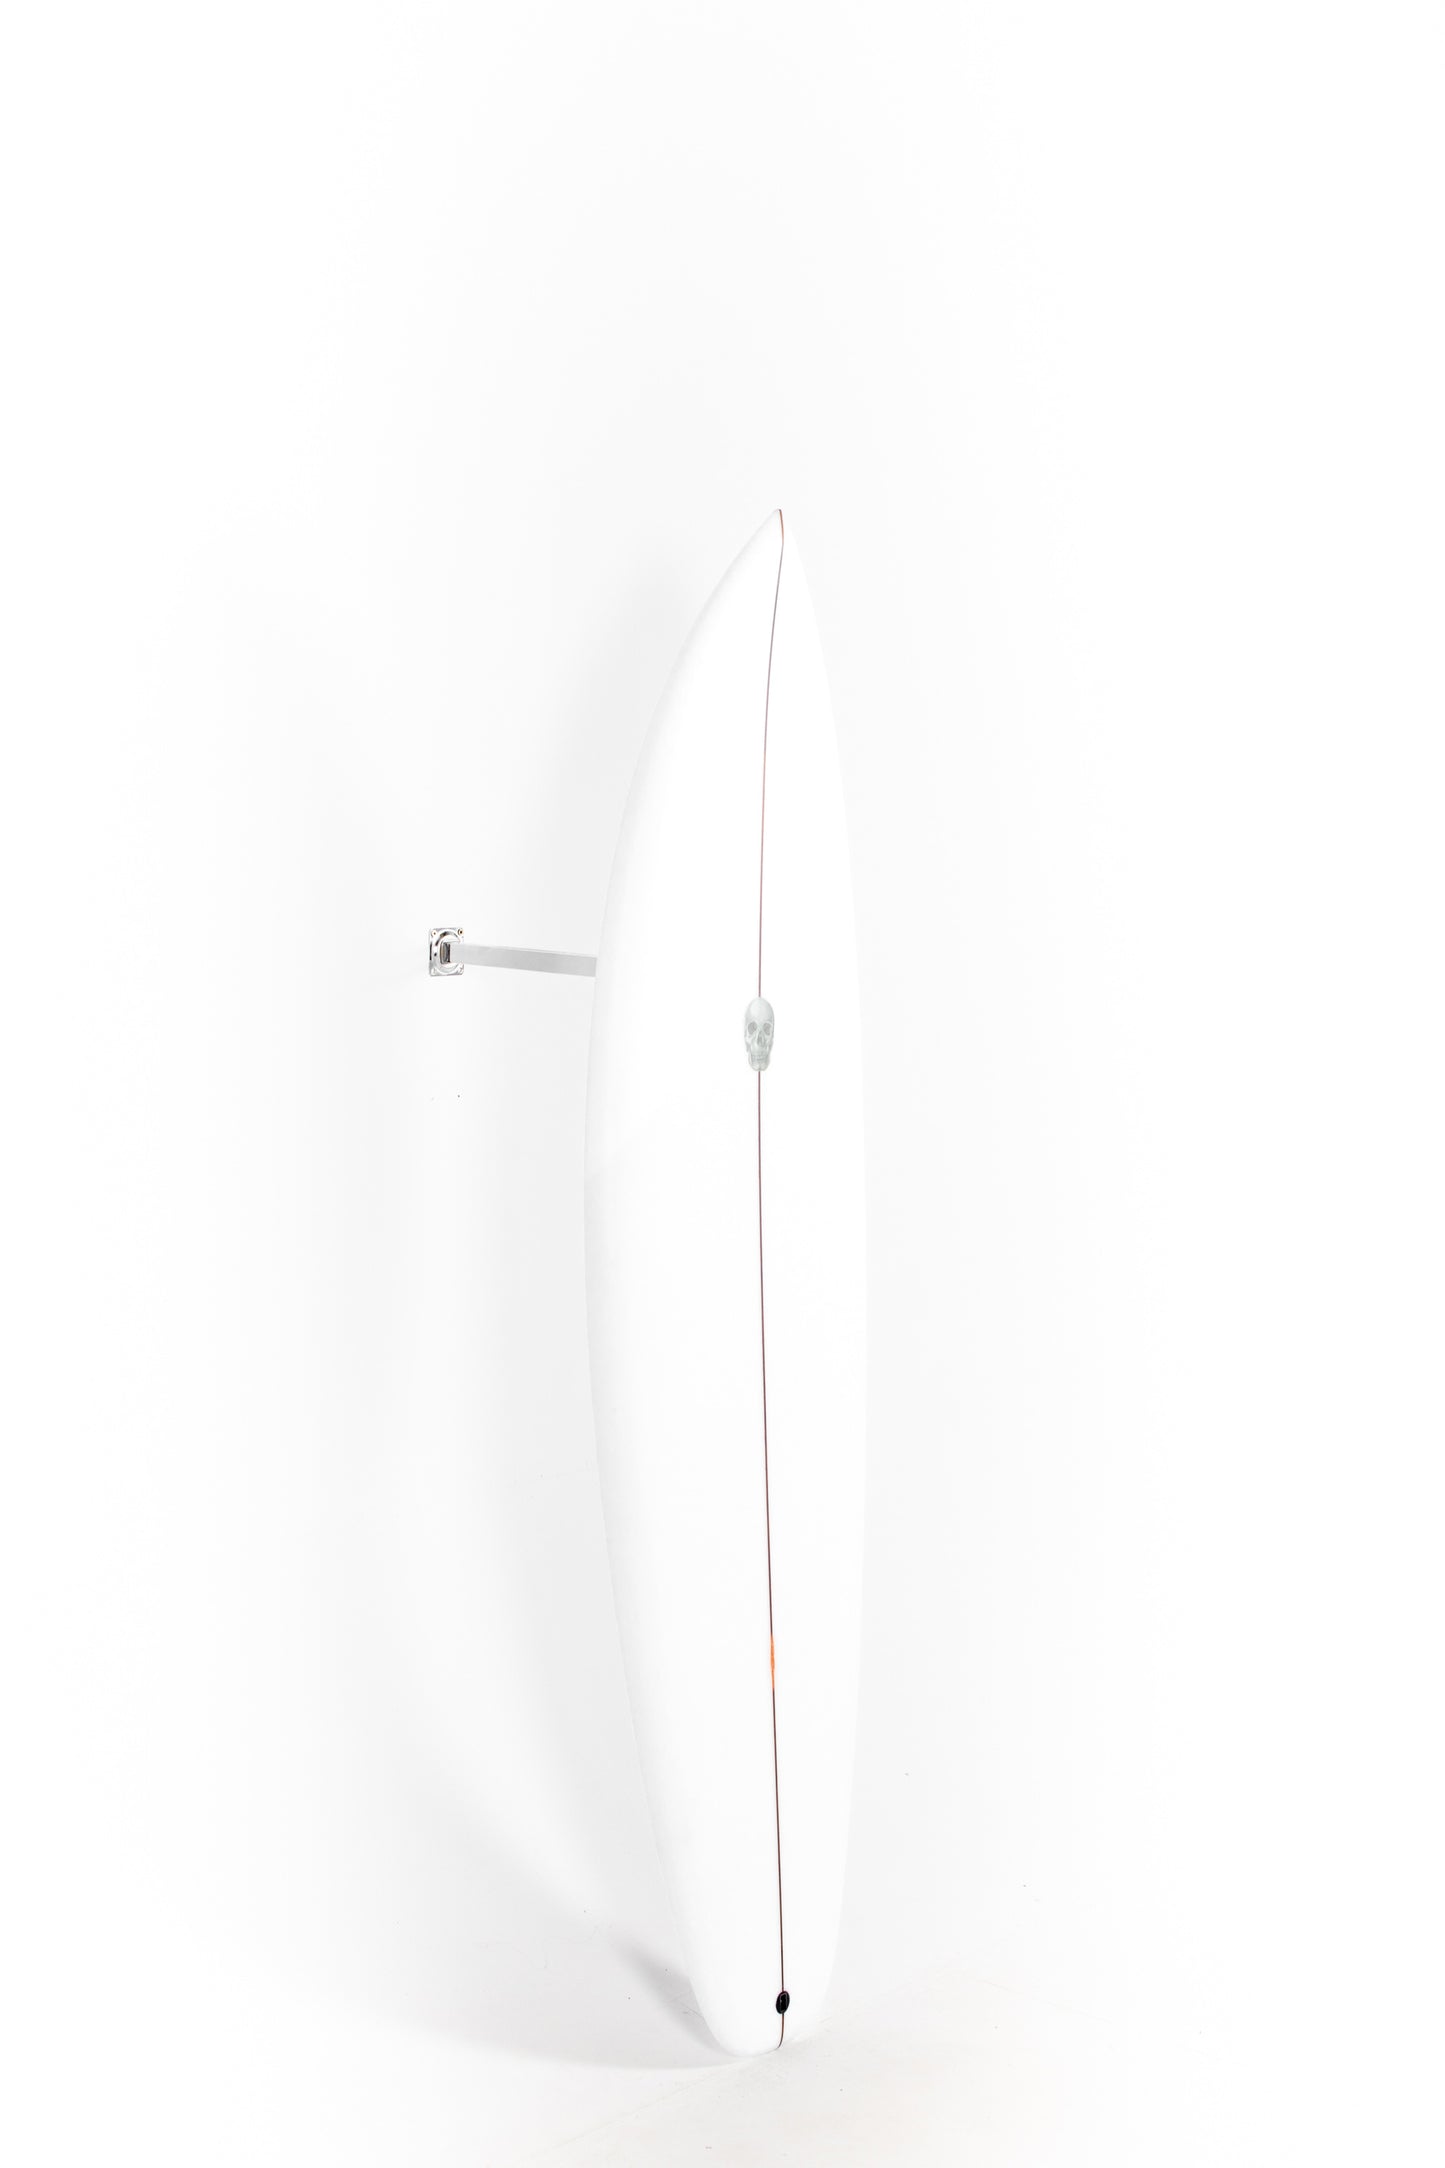 
                  
                    Pukas Surf Shop - Christenson Surfboard  - SURFER ROSA - 5'10” x 19 3/4 x 2 7/16 - CX04685
                  
                